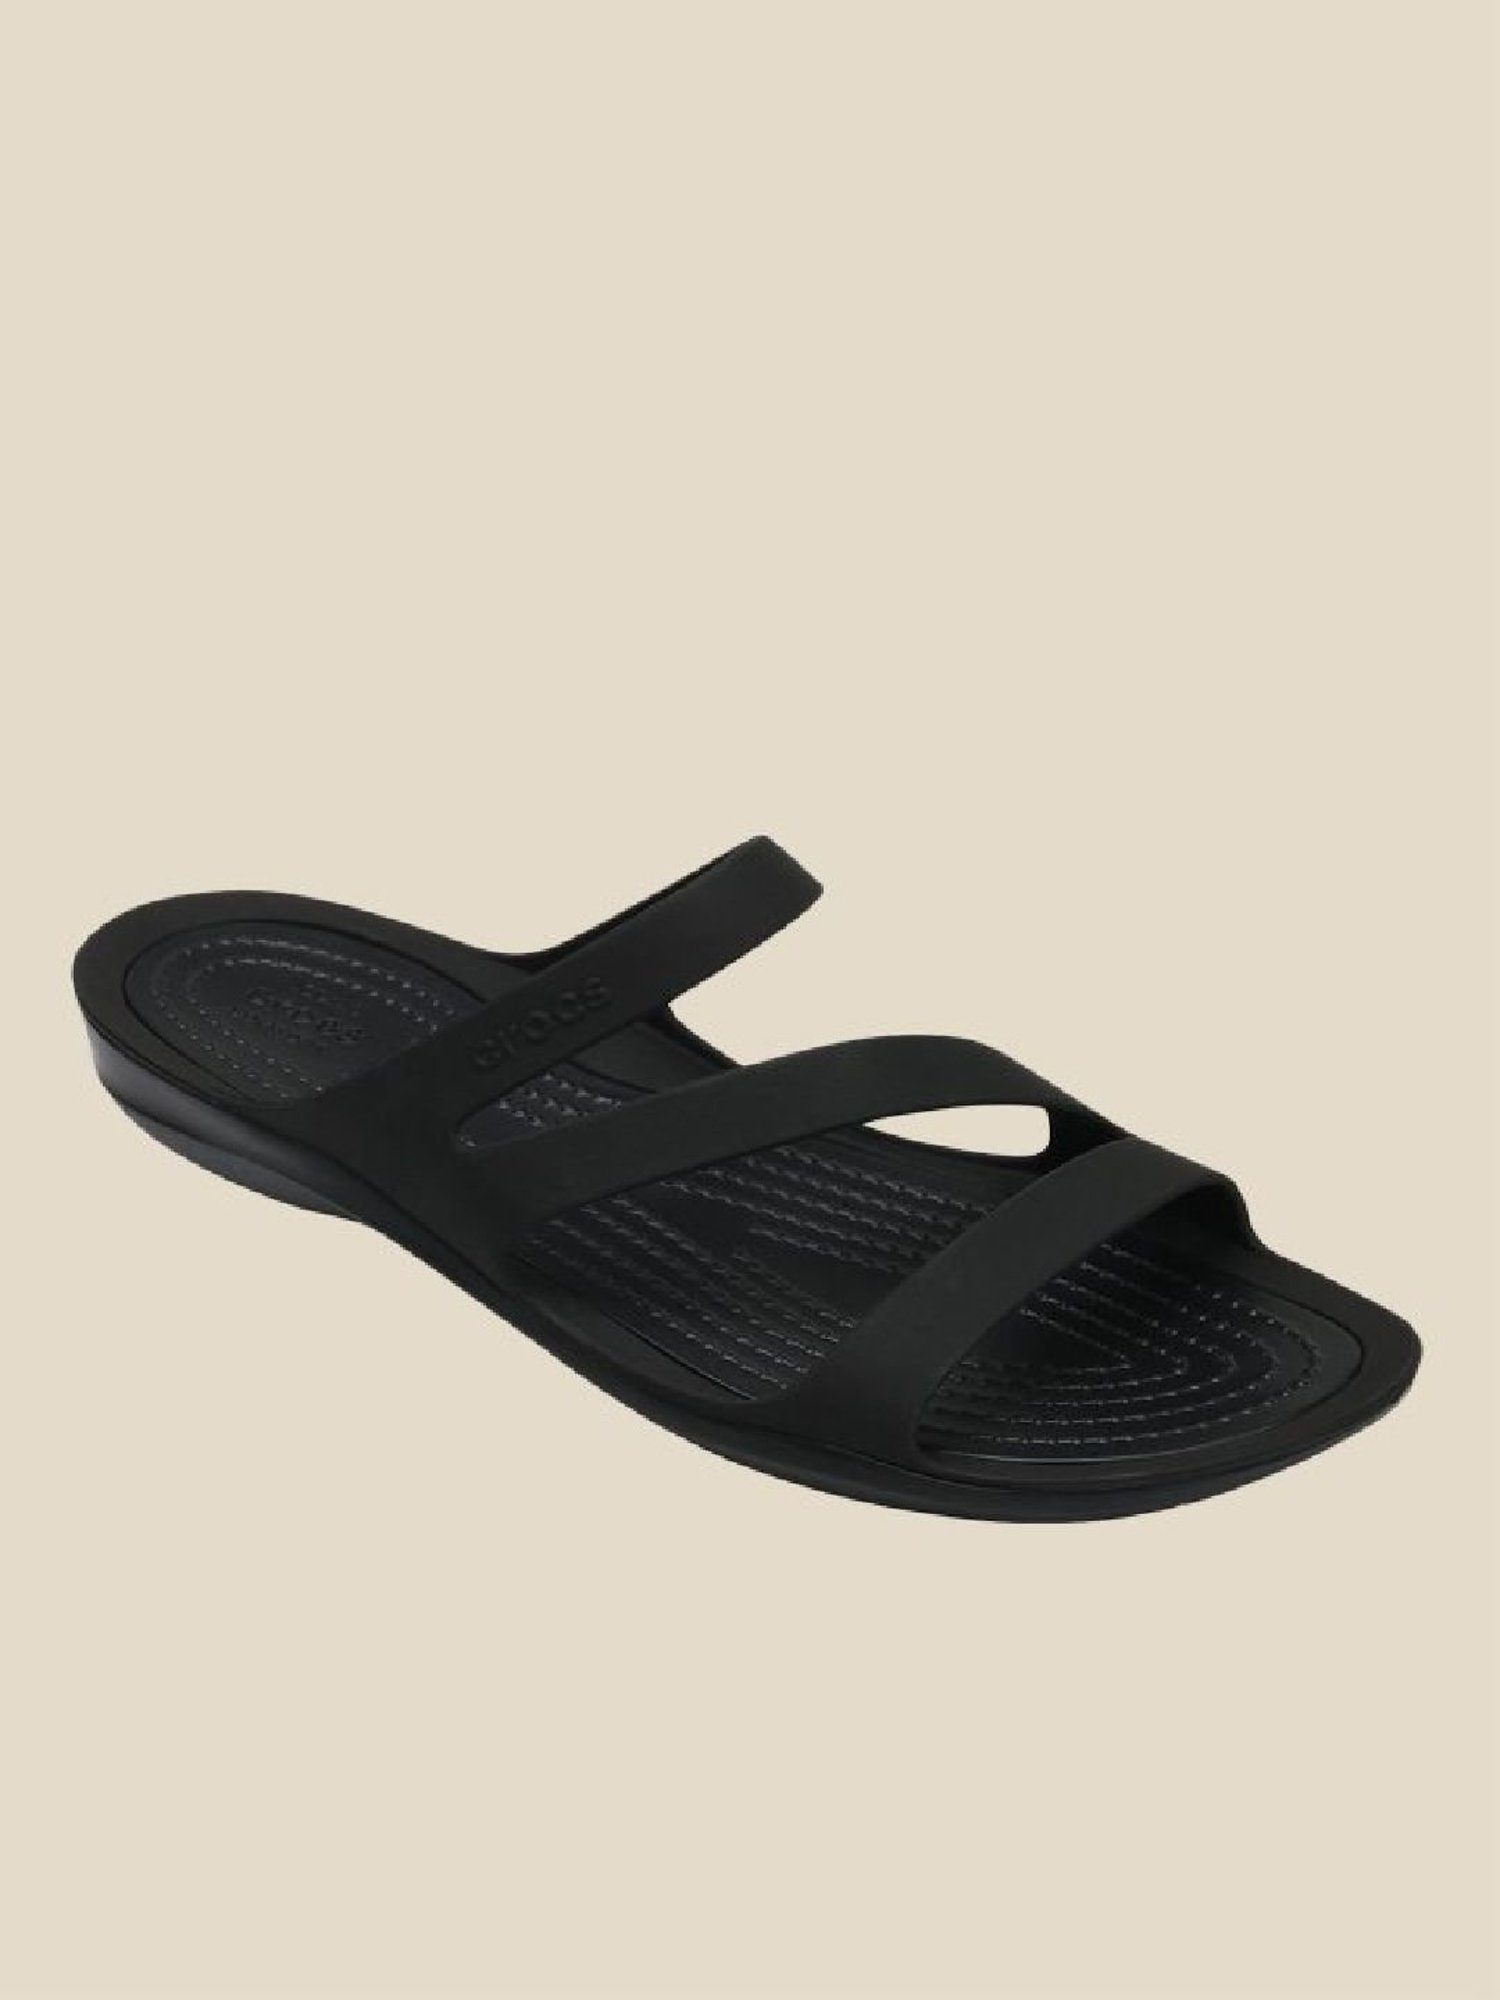 Crocs Women's Swiftwater Sandals - Walmart.com